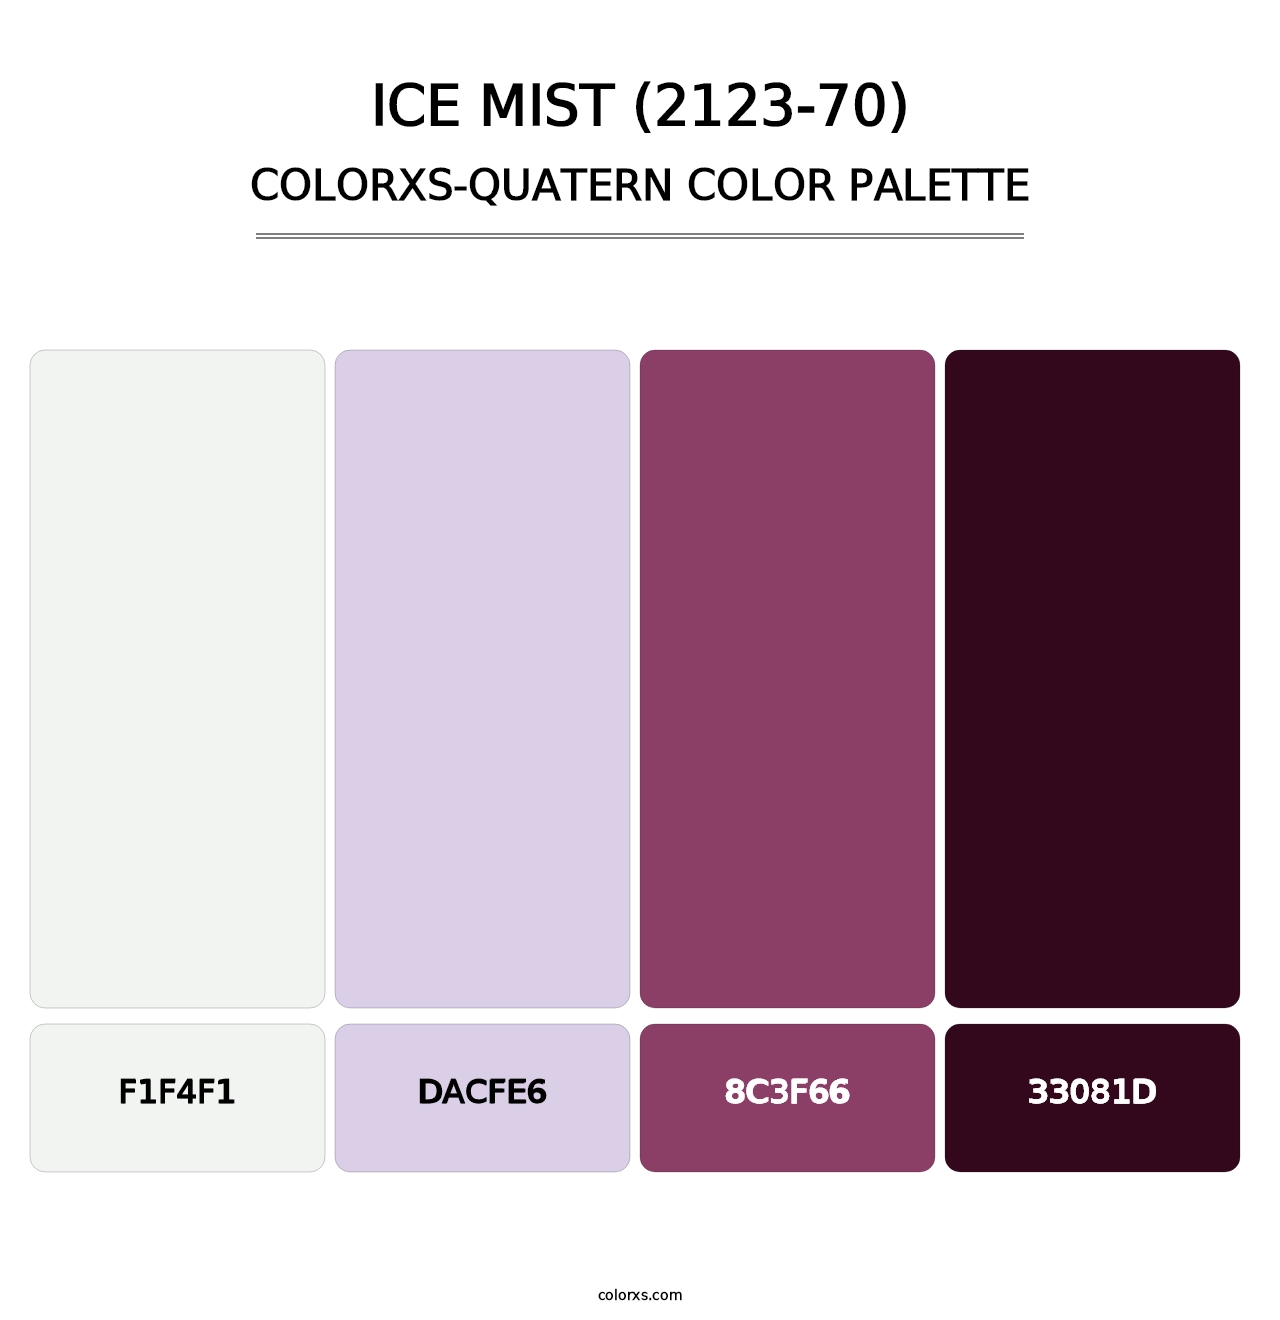 Ice Mist (2123-70) - Colorxs Quatern Palette